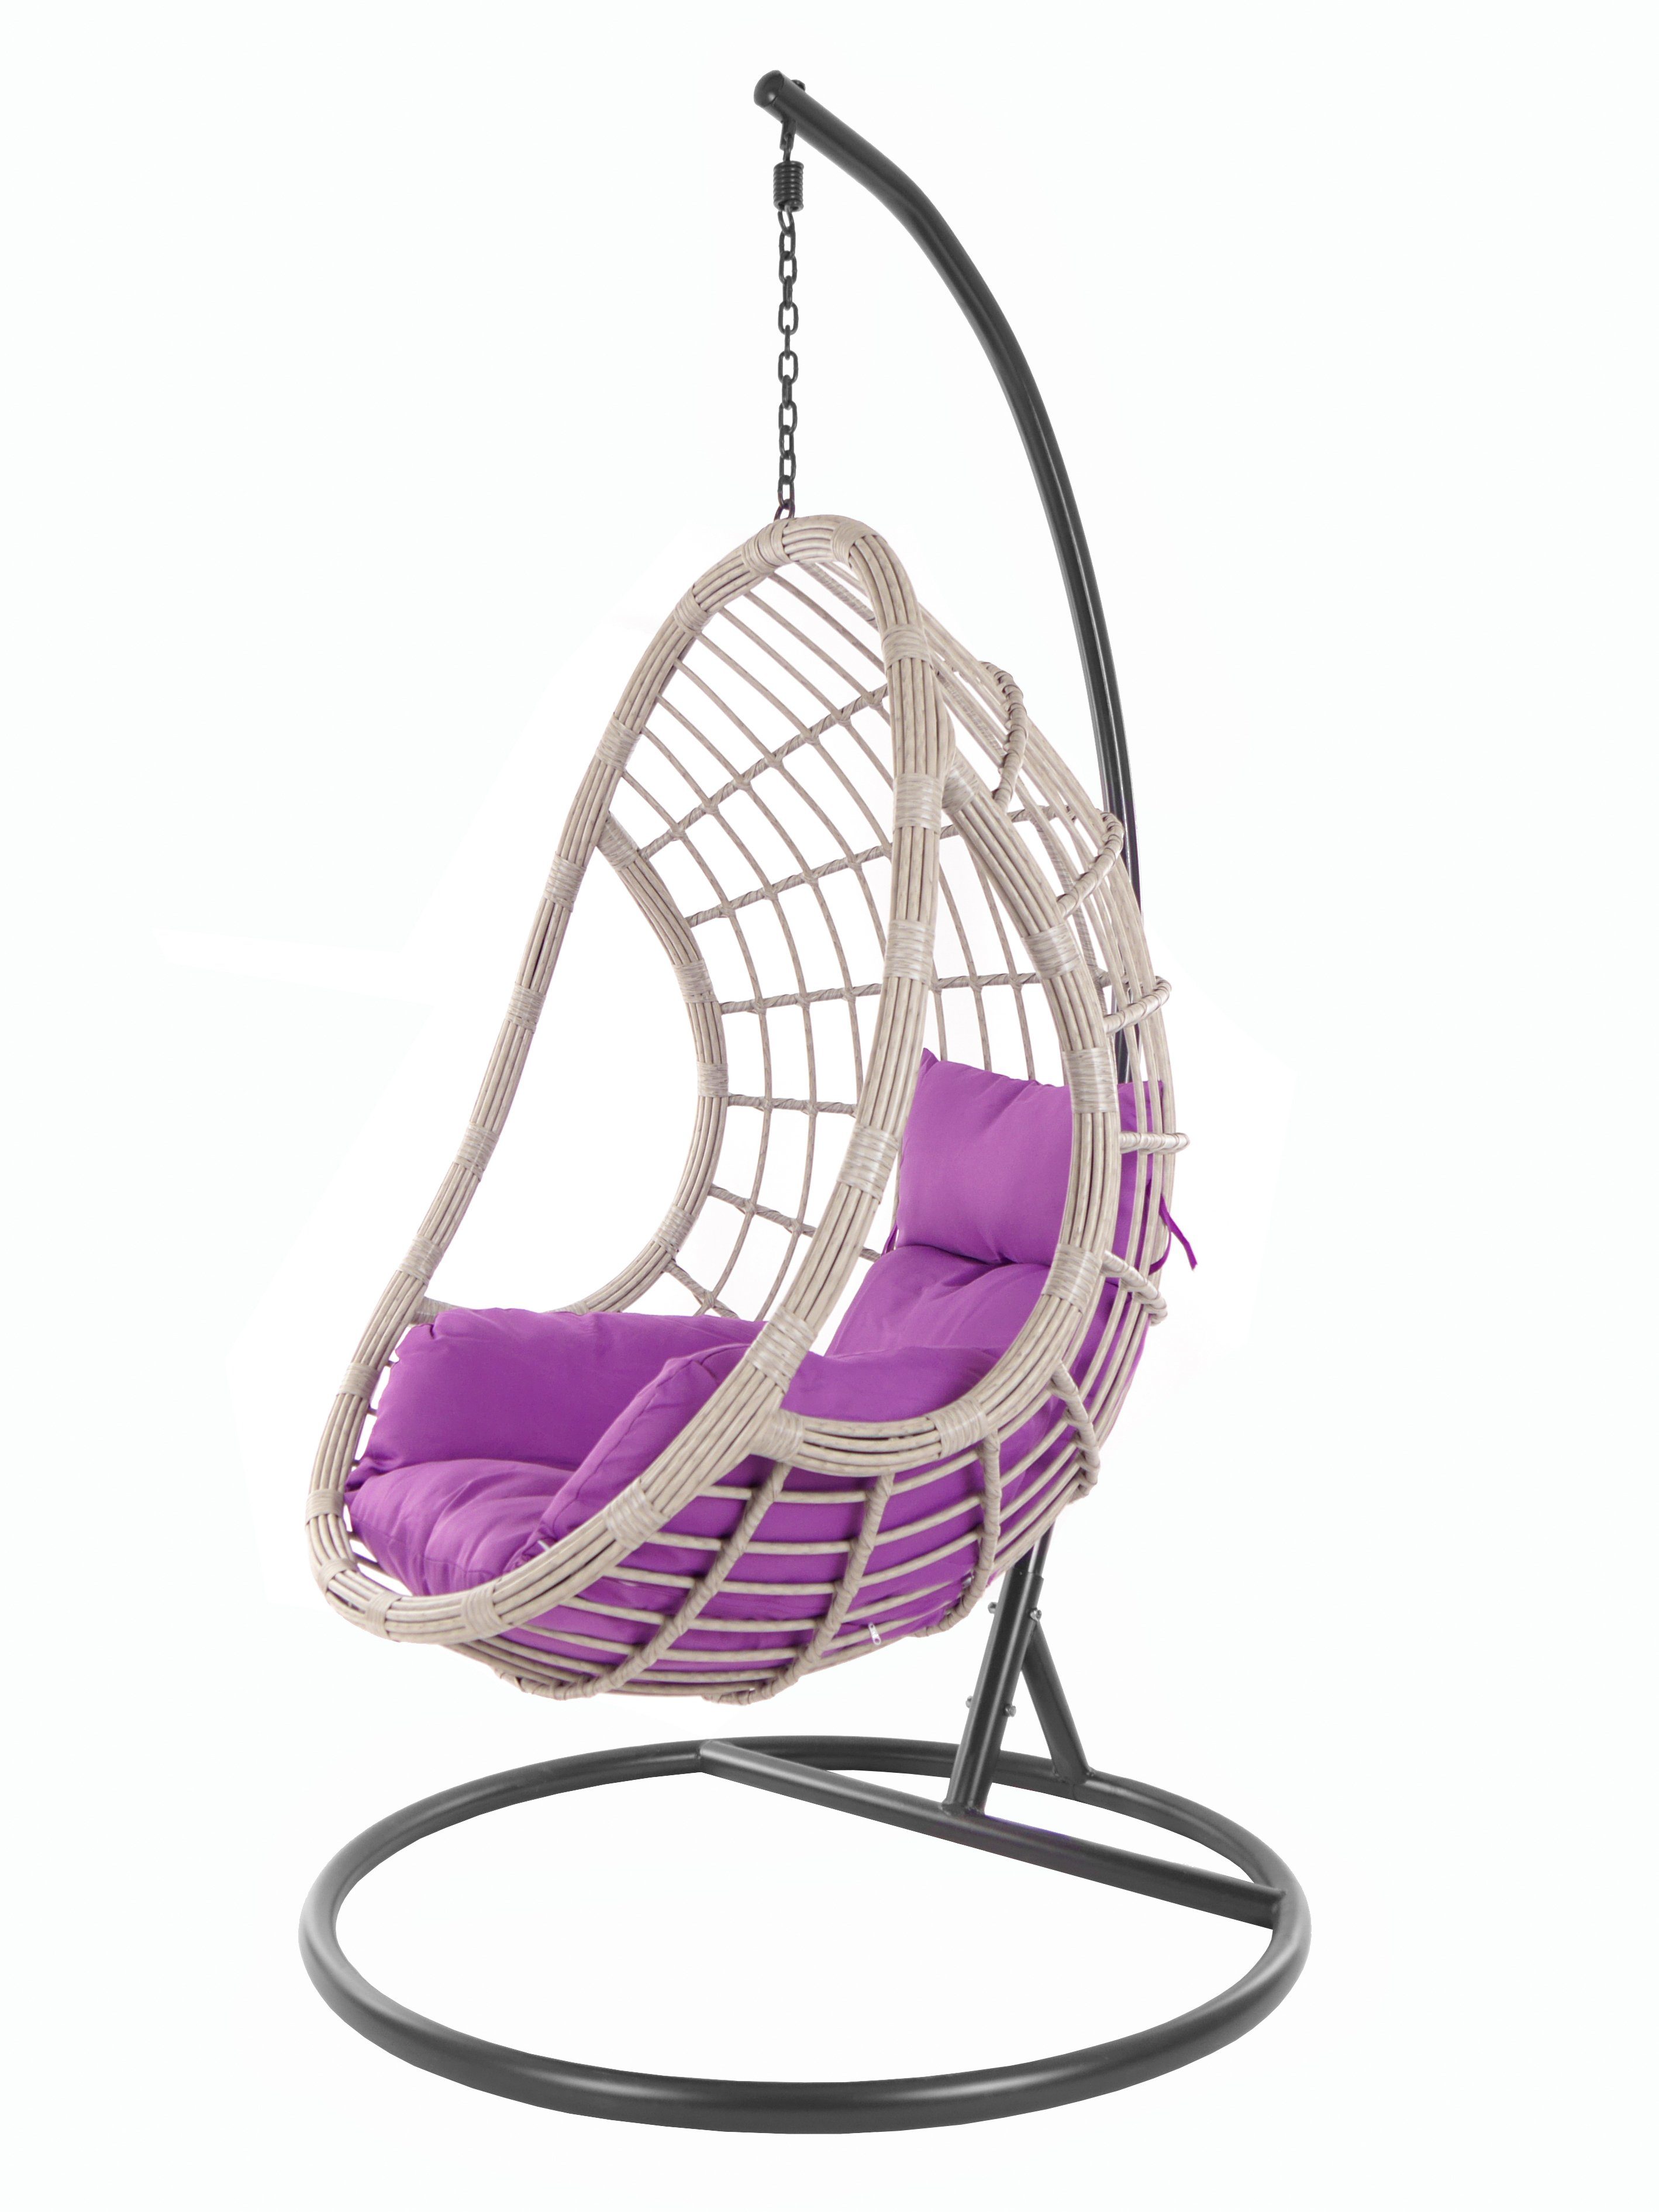 (4050 Hängesessel Nest-Kissen Hängesessel violet) lila KIDEO PALMANOVA Gestell Loungemöbel, Nest-Kissen und grey Farbe, Kissen, Schwebesessel melange mit Komplettset,